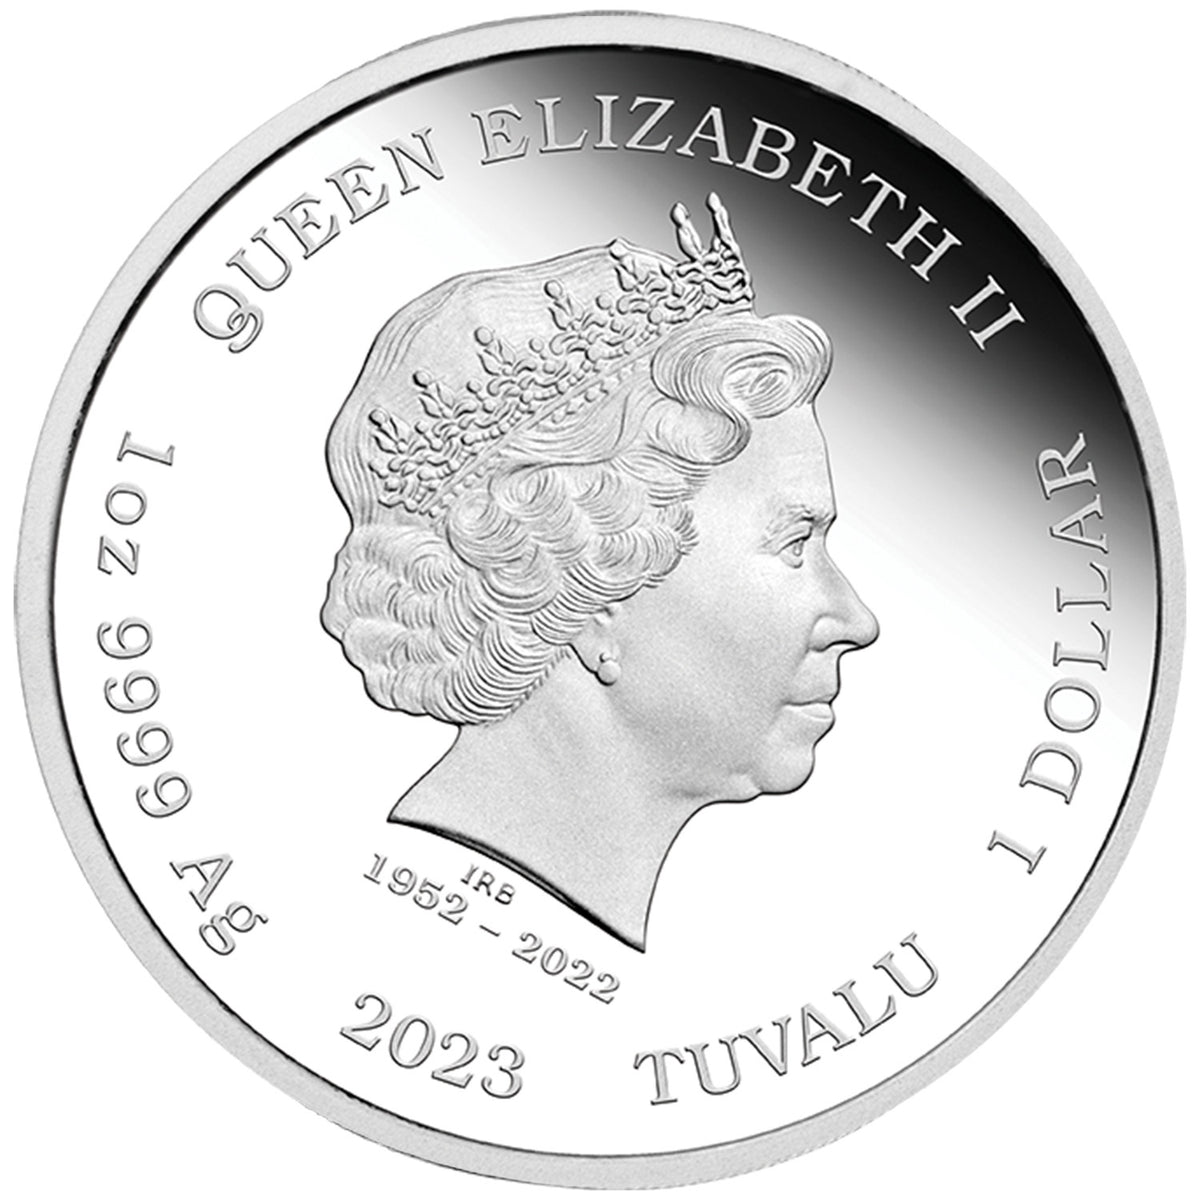 James Bond Timothy Dalton 1 Unze Silbermünze in polierter Platte – nummerierte Ausgabe – von der Perth Mint